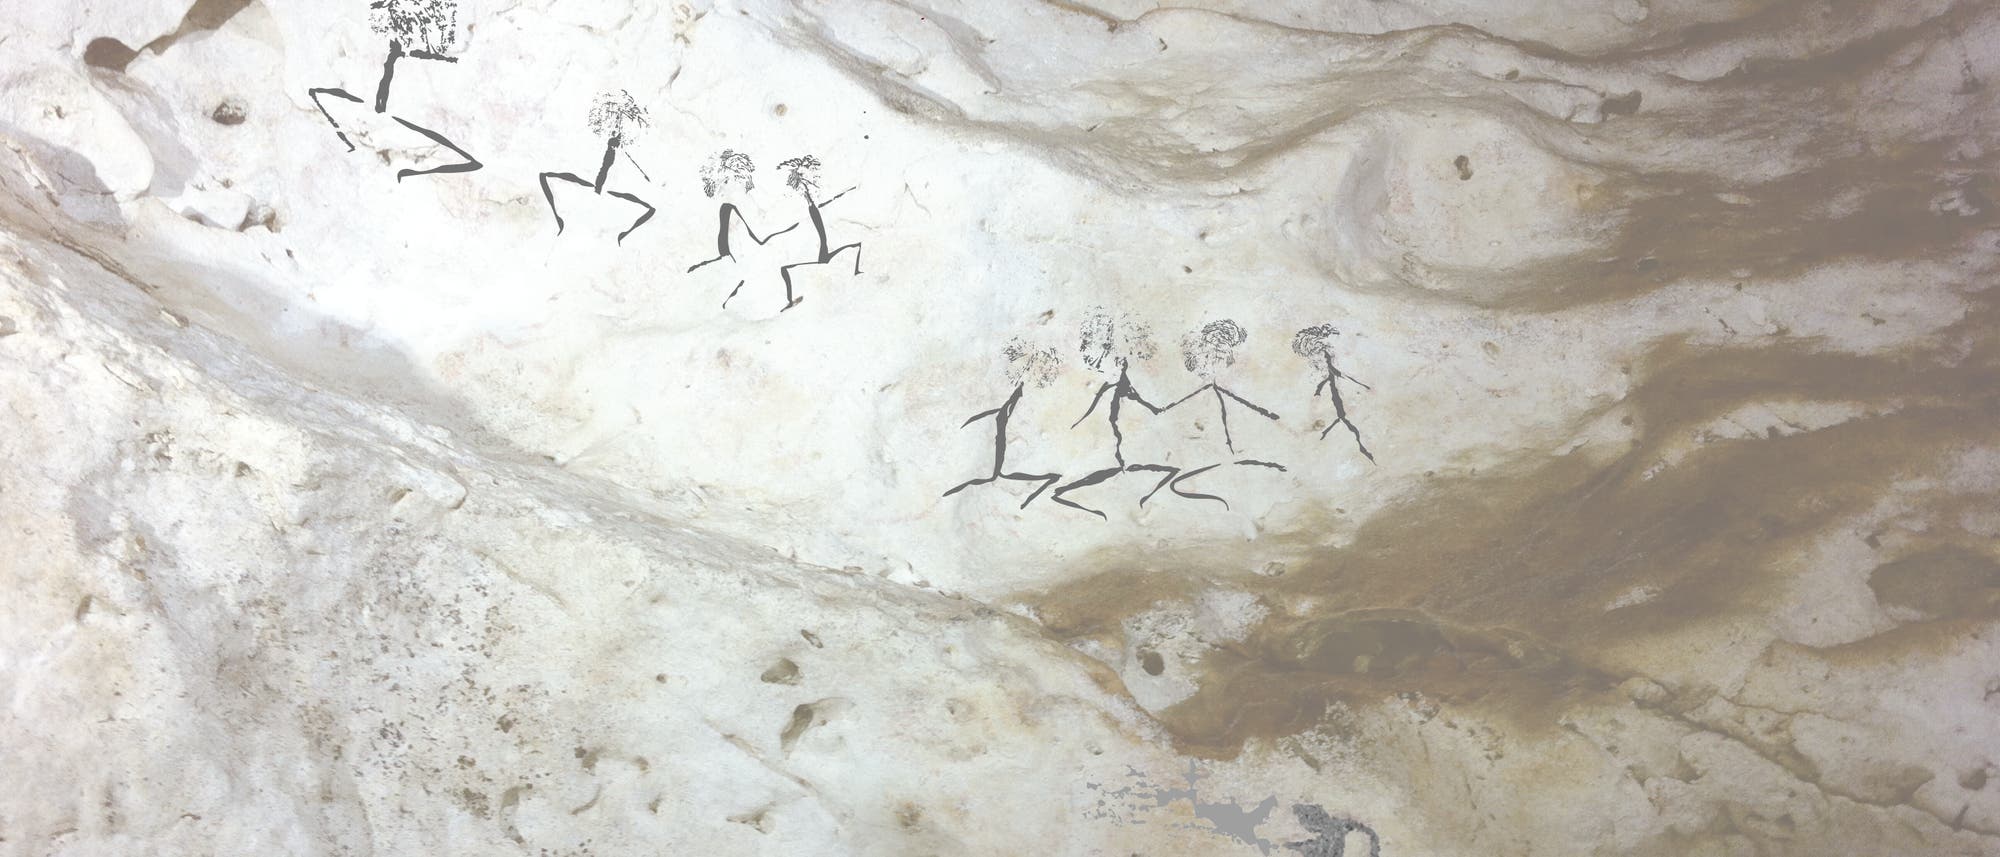 Diese Darstellungen von Menschen gehören mit bis zu 20 000 Jahren Alter zu den jüngeren Höhlenkunstwerken Indonesiens und zeigen, dass sich der Stil der Abbildungen schon während der letzten Kaltzeit immer wieder änderte.